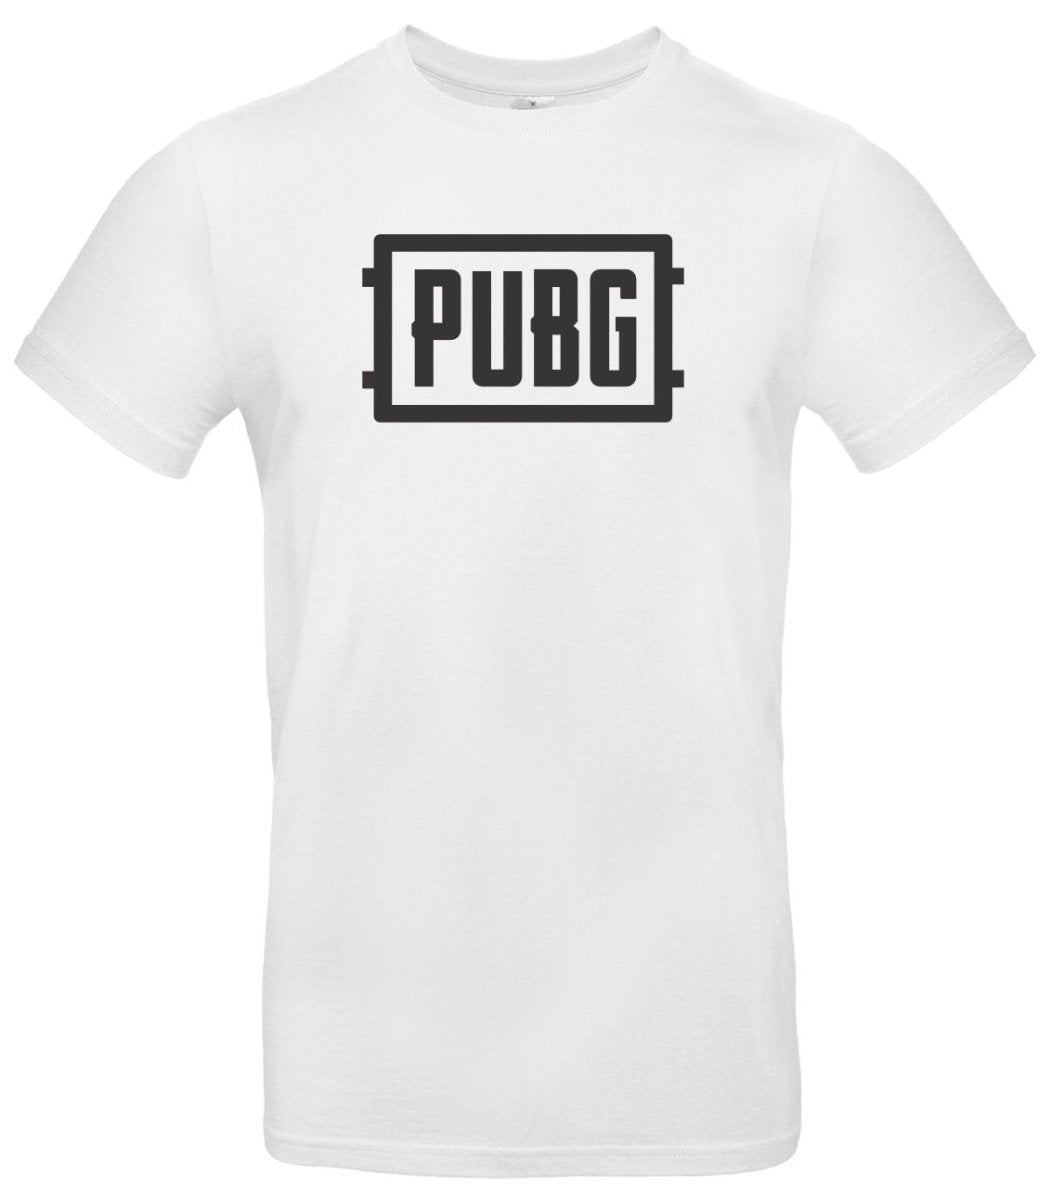 PUBG T-Shirt: Zeige Deine Leidenschaft für das Spiel! - Stickerloveshop